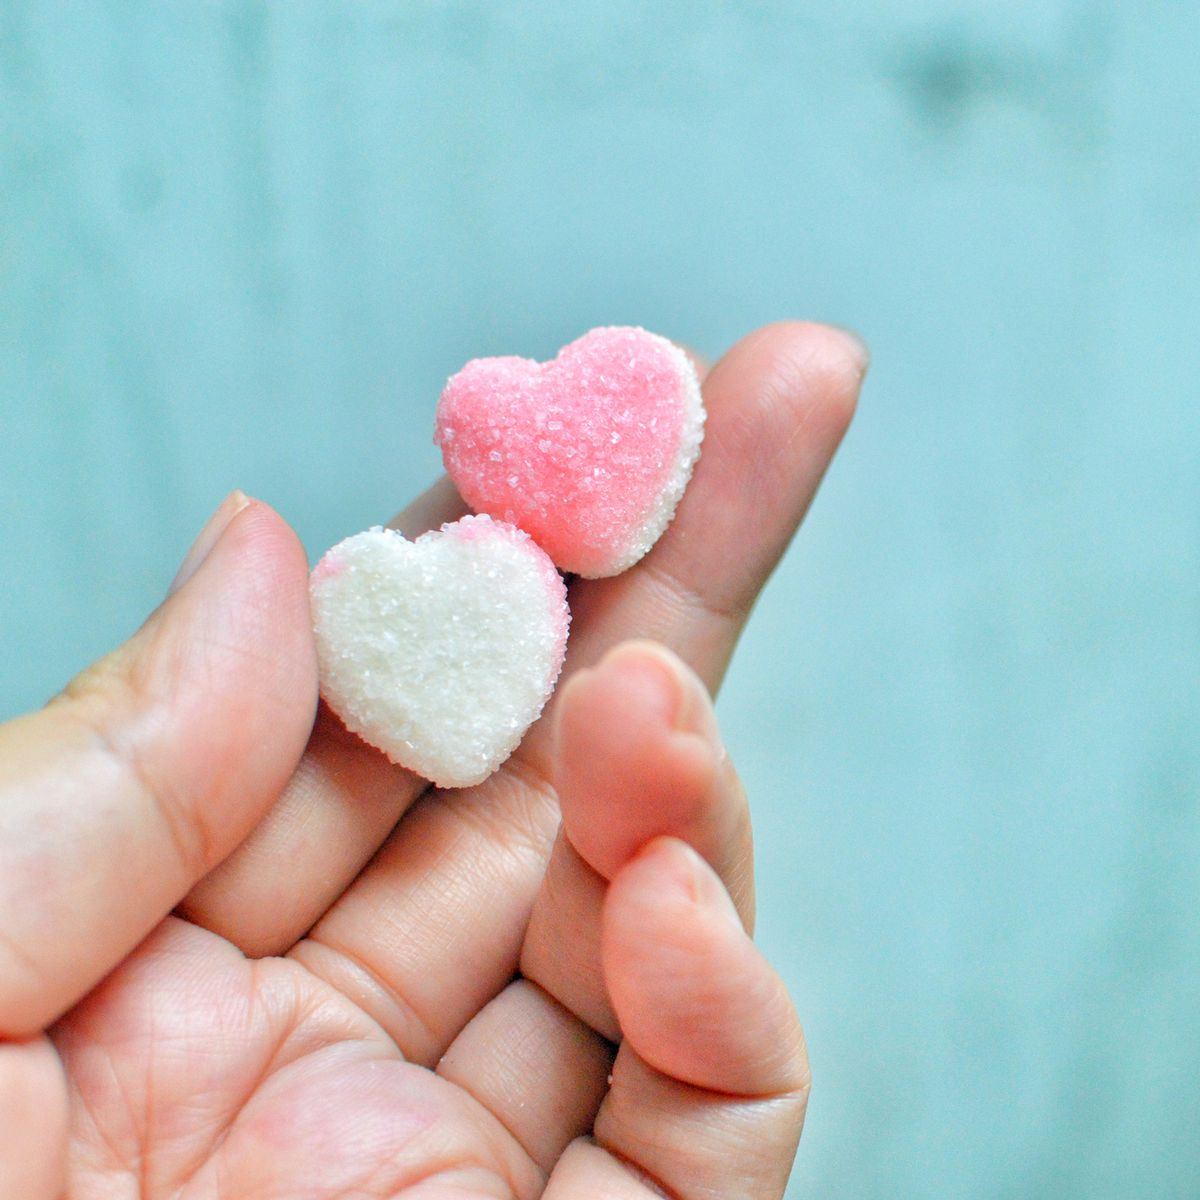 heart-gummies-royalty-free-image-1685549714.jpg